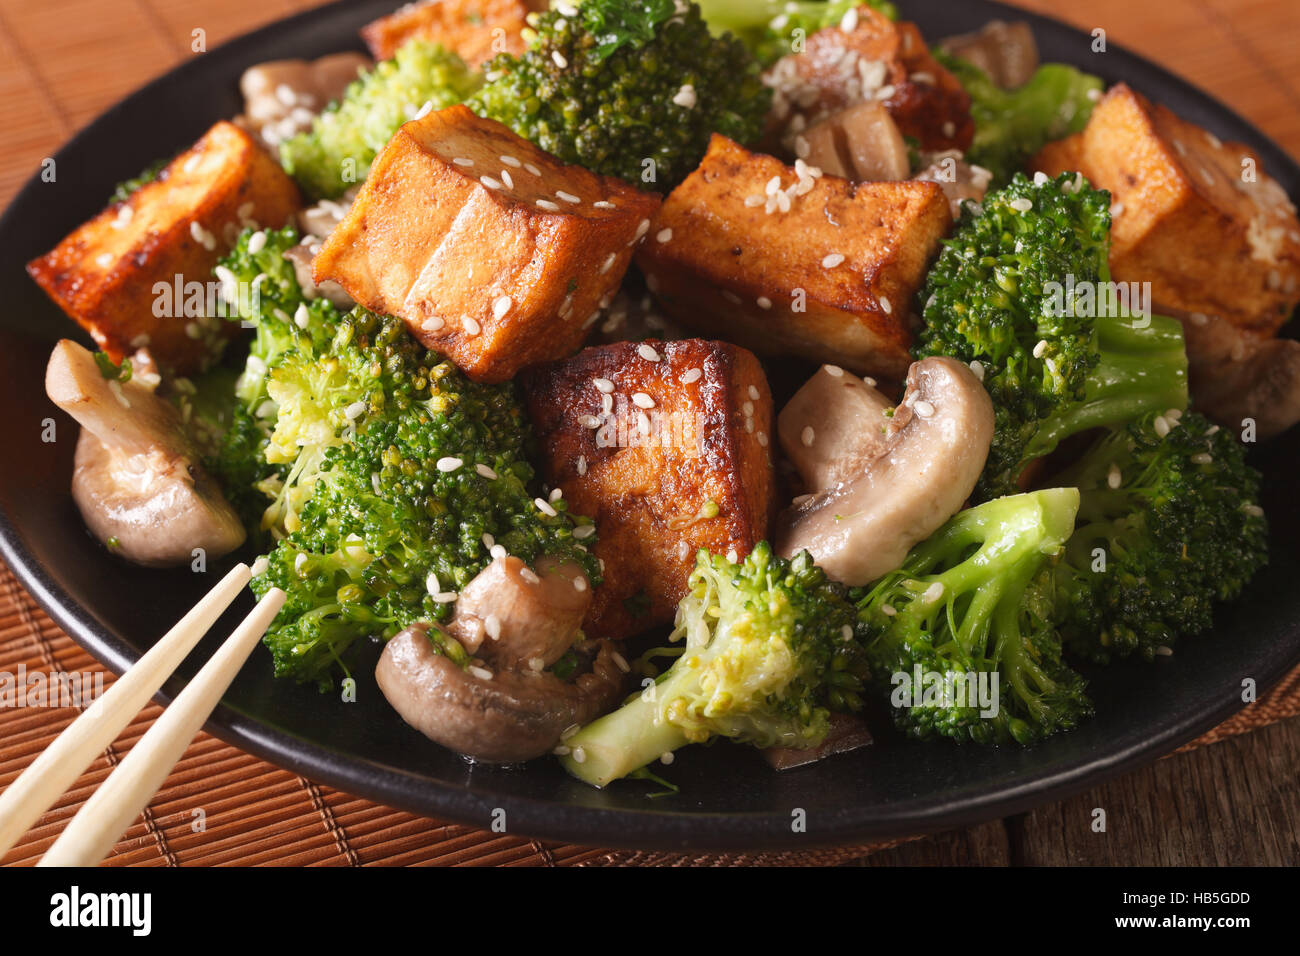 Cibo vegetariano: tofu fritto con broccoli, funghi e sesamo close-up su una piastra orizzontale. Foto Stock